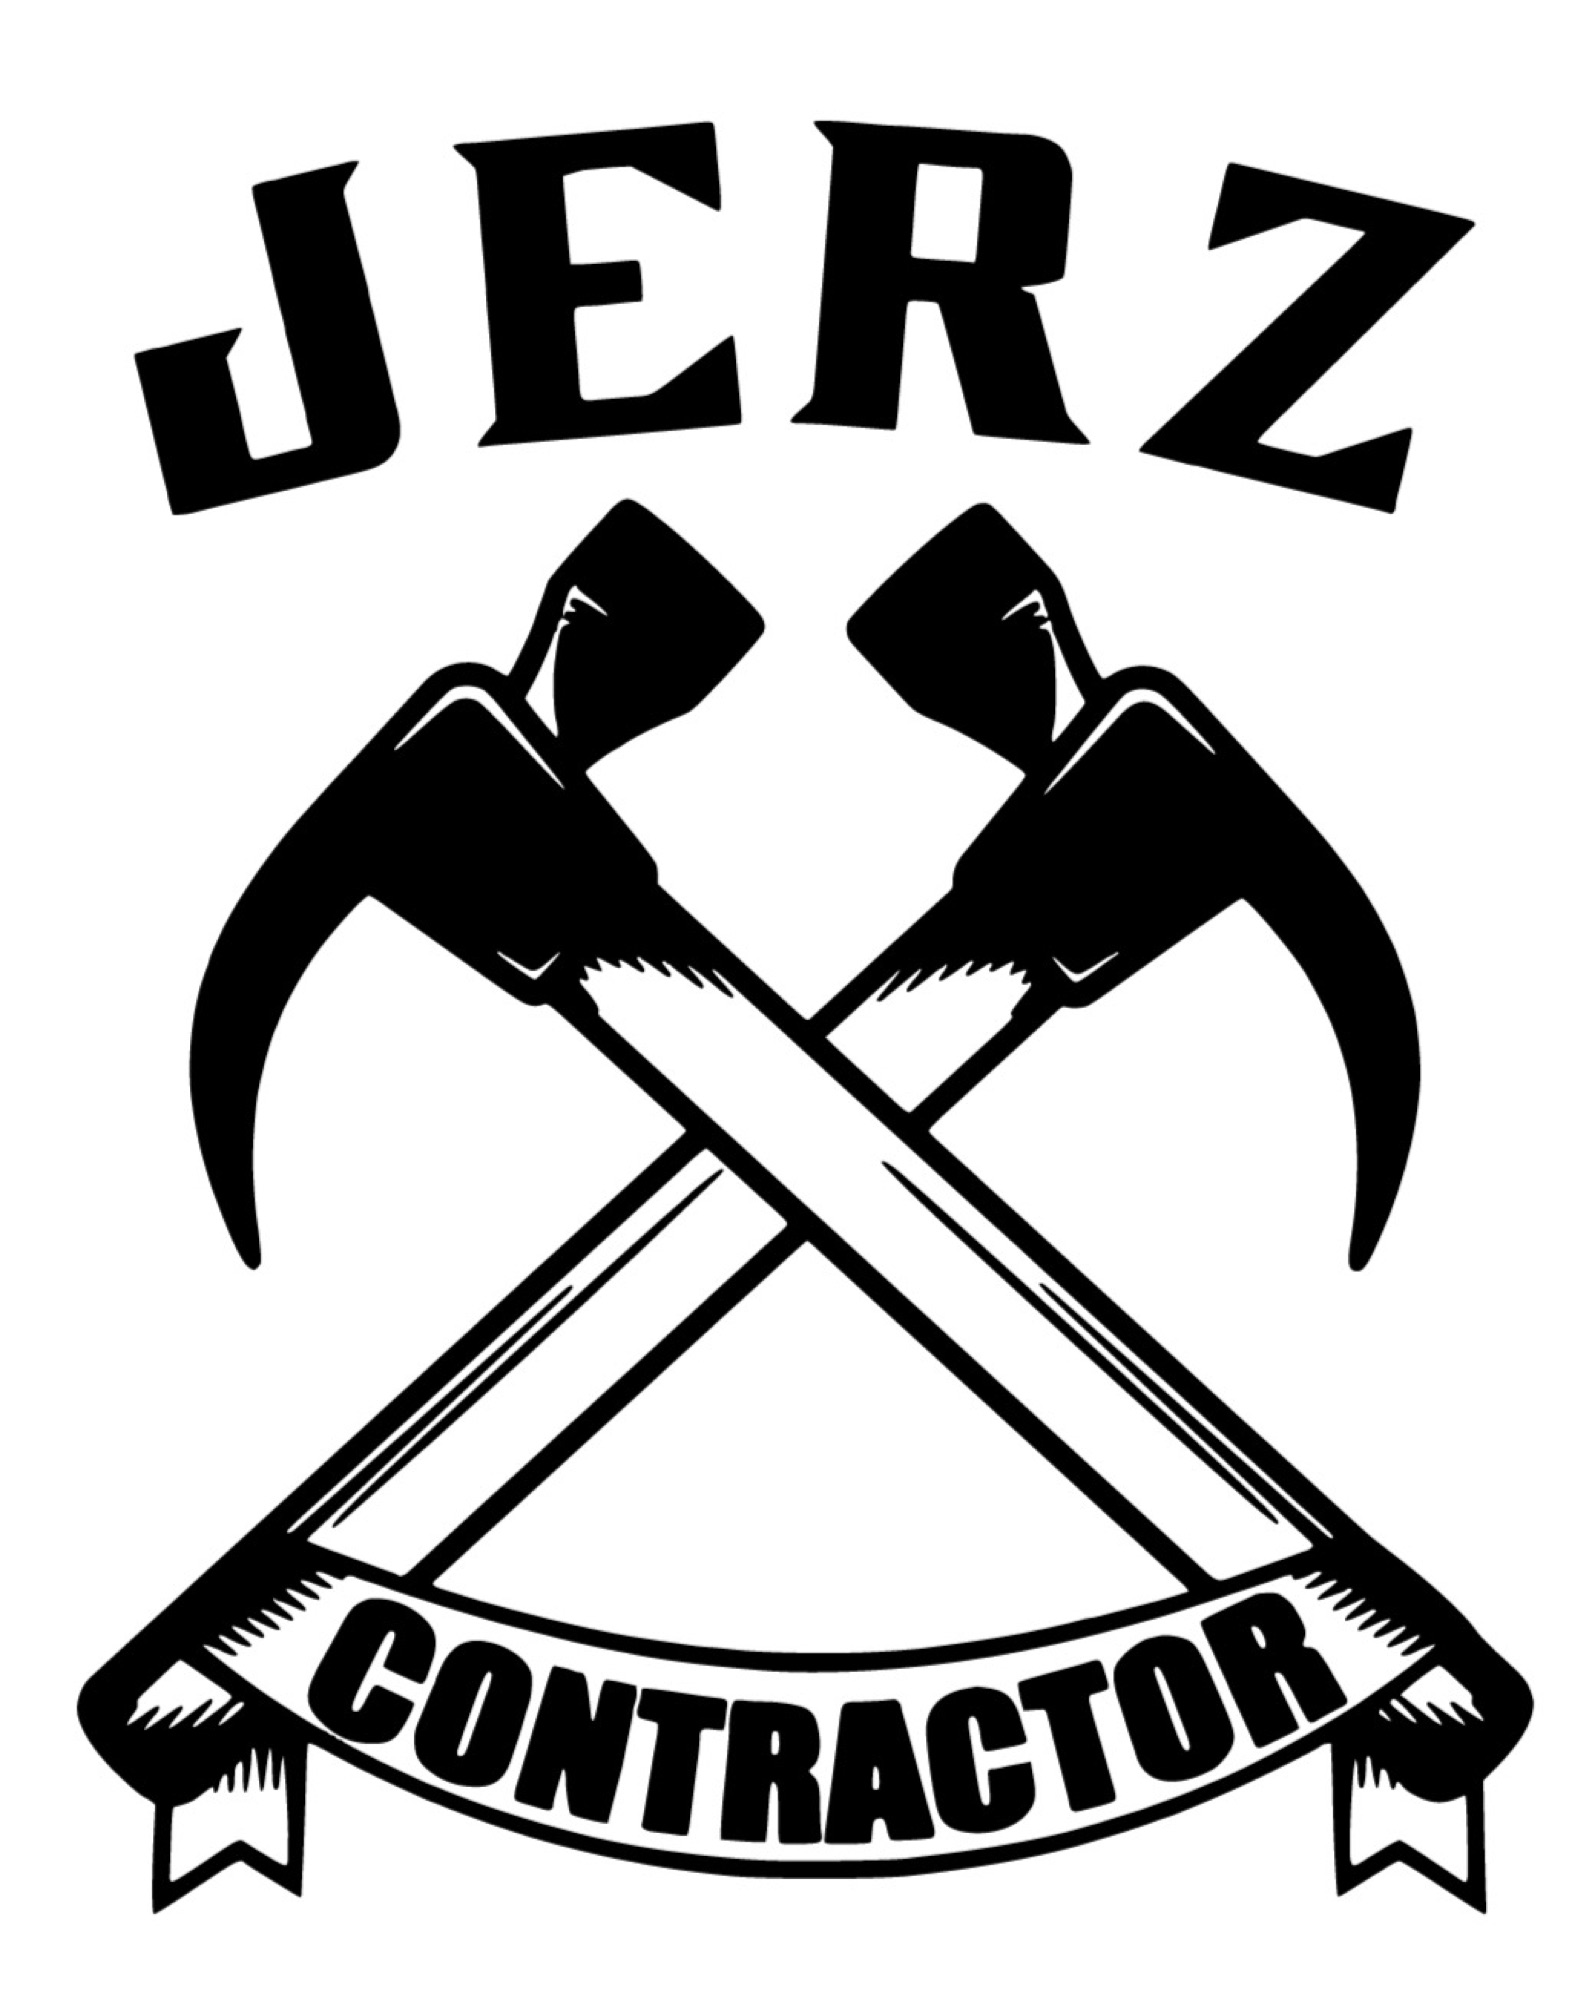 JERZ Contractor Logo